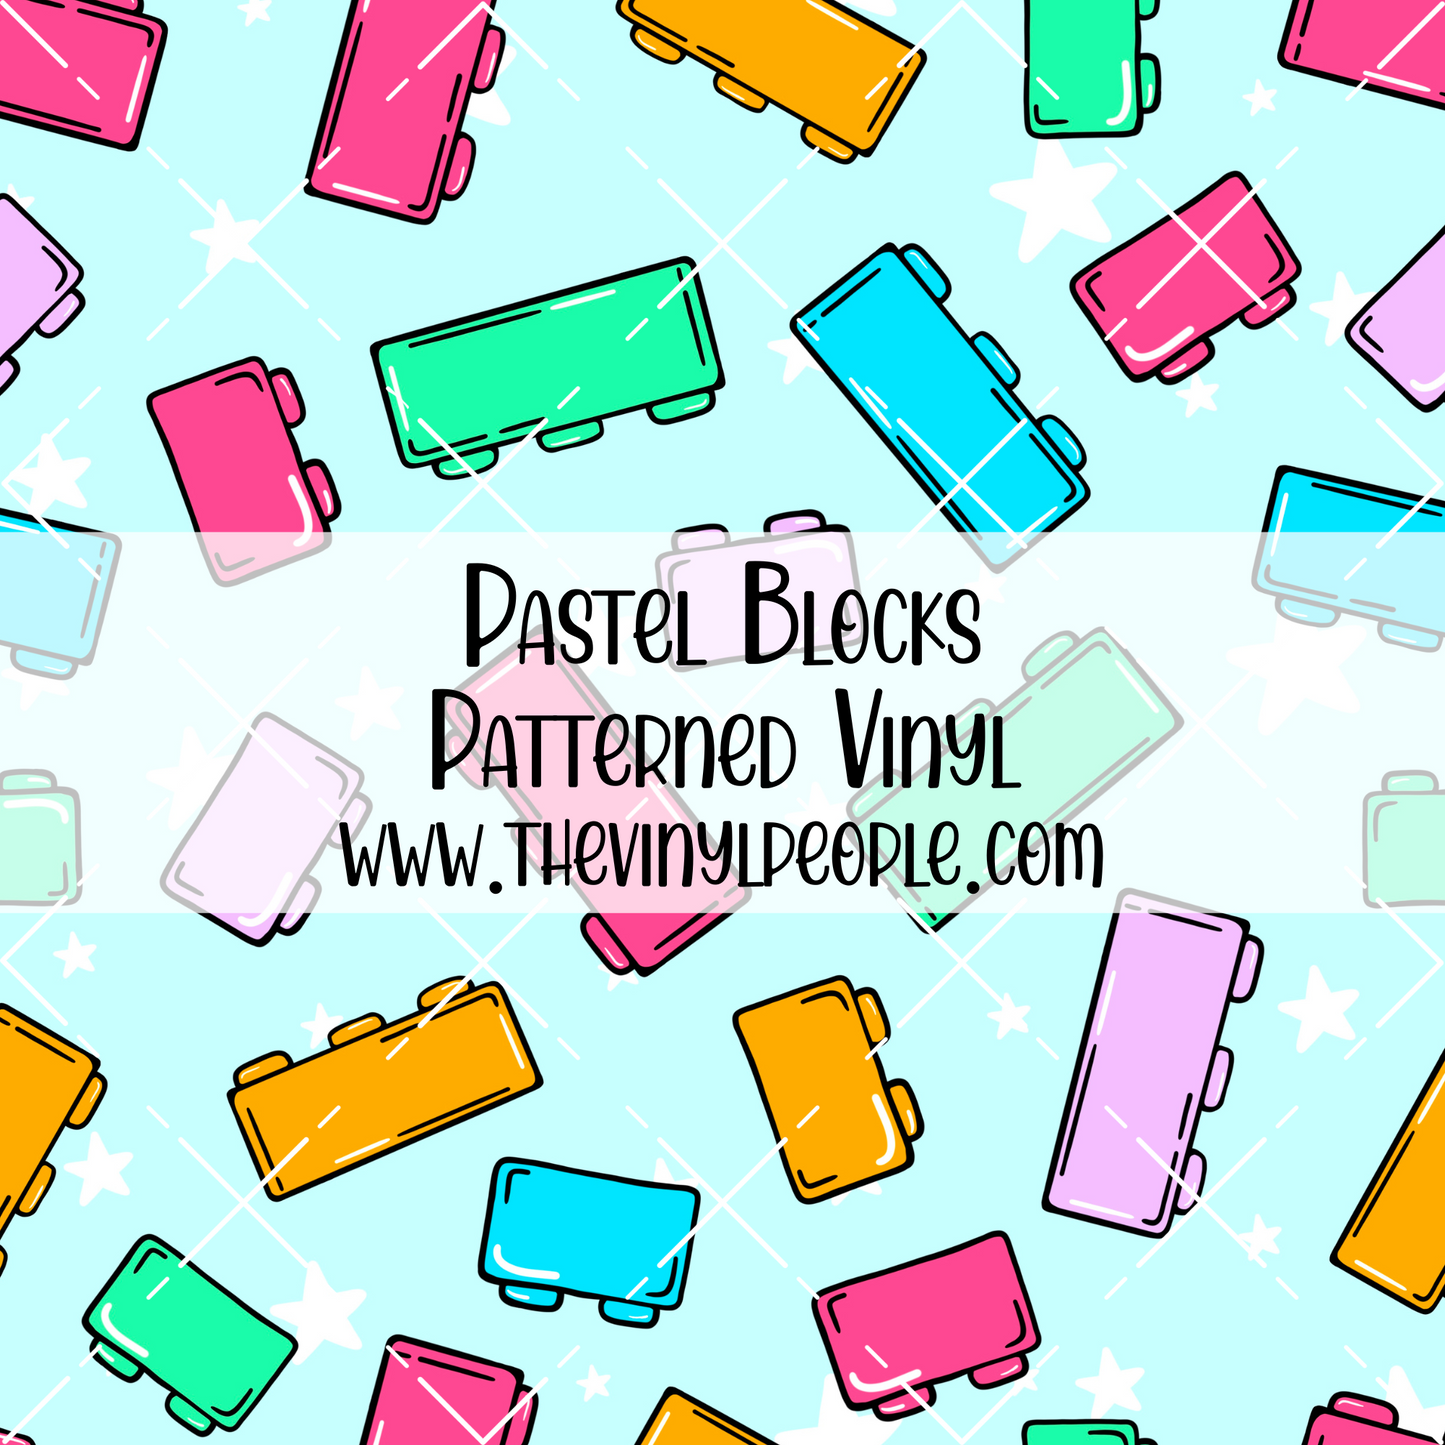 Pastel Blocks Patterned Vinyl